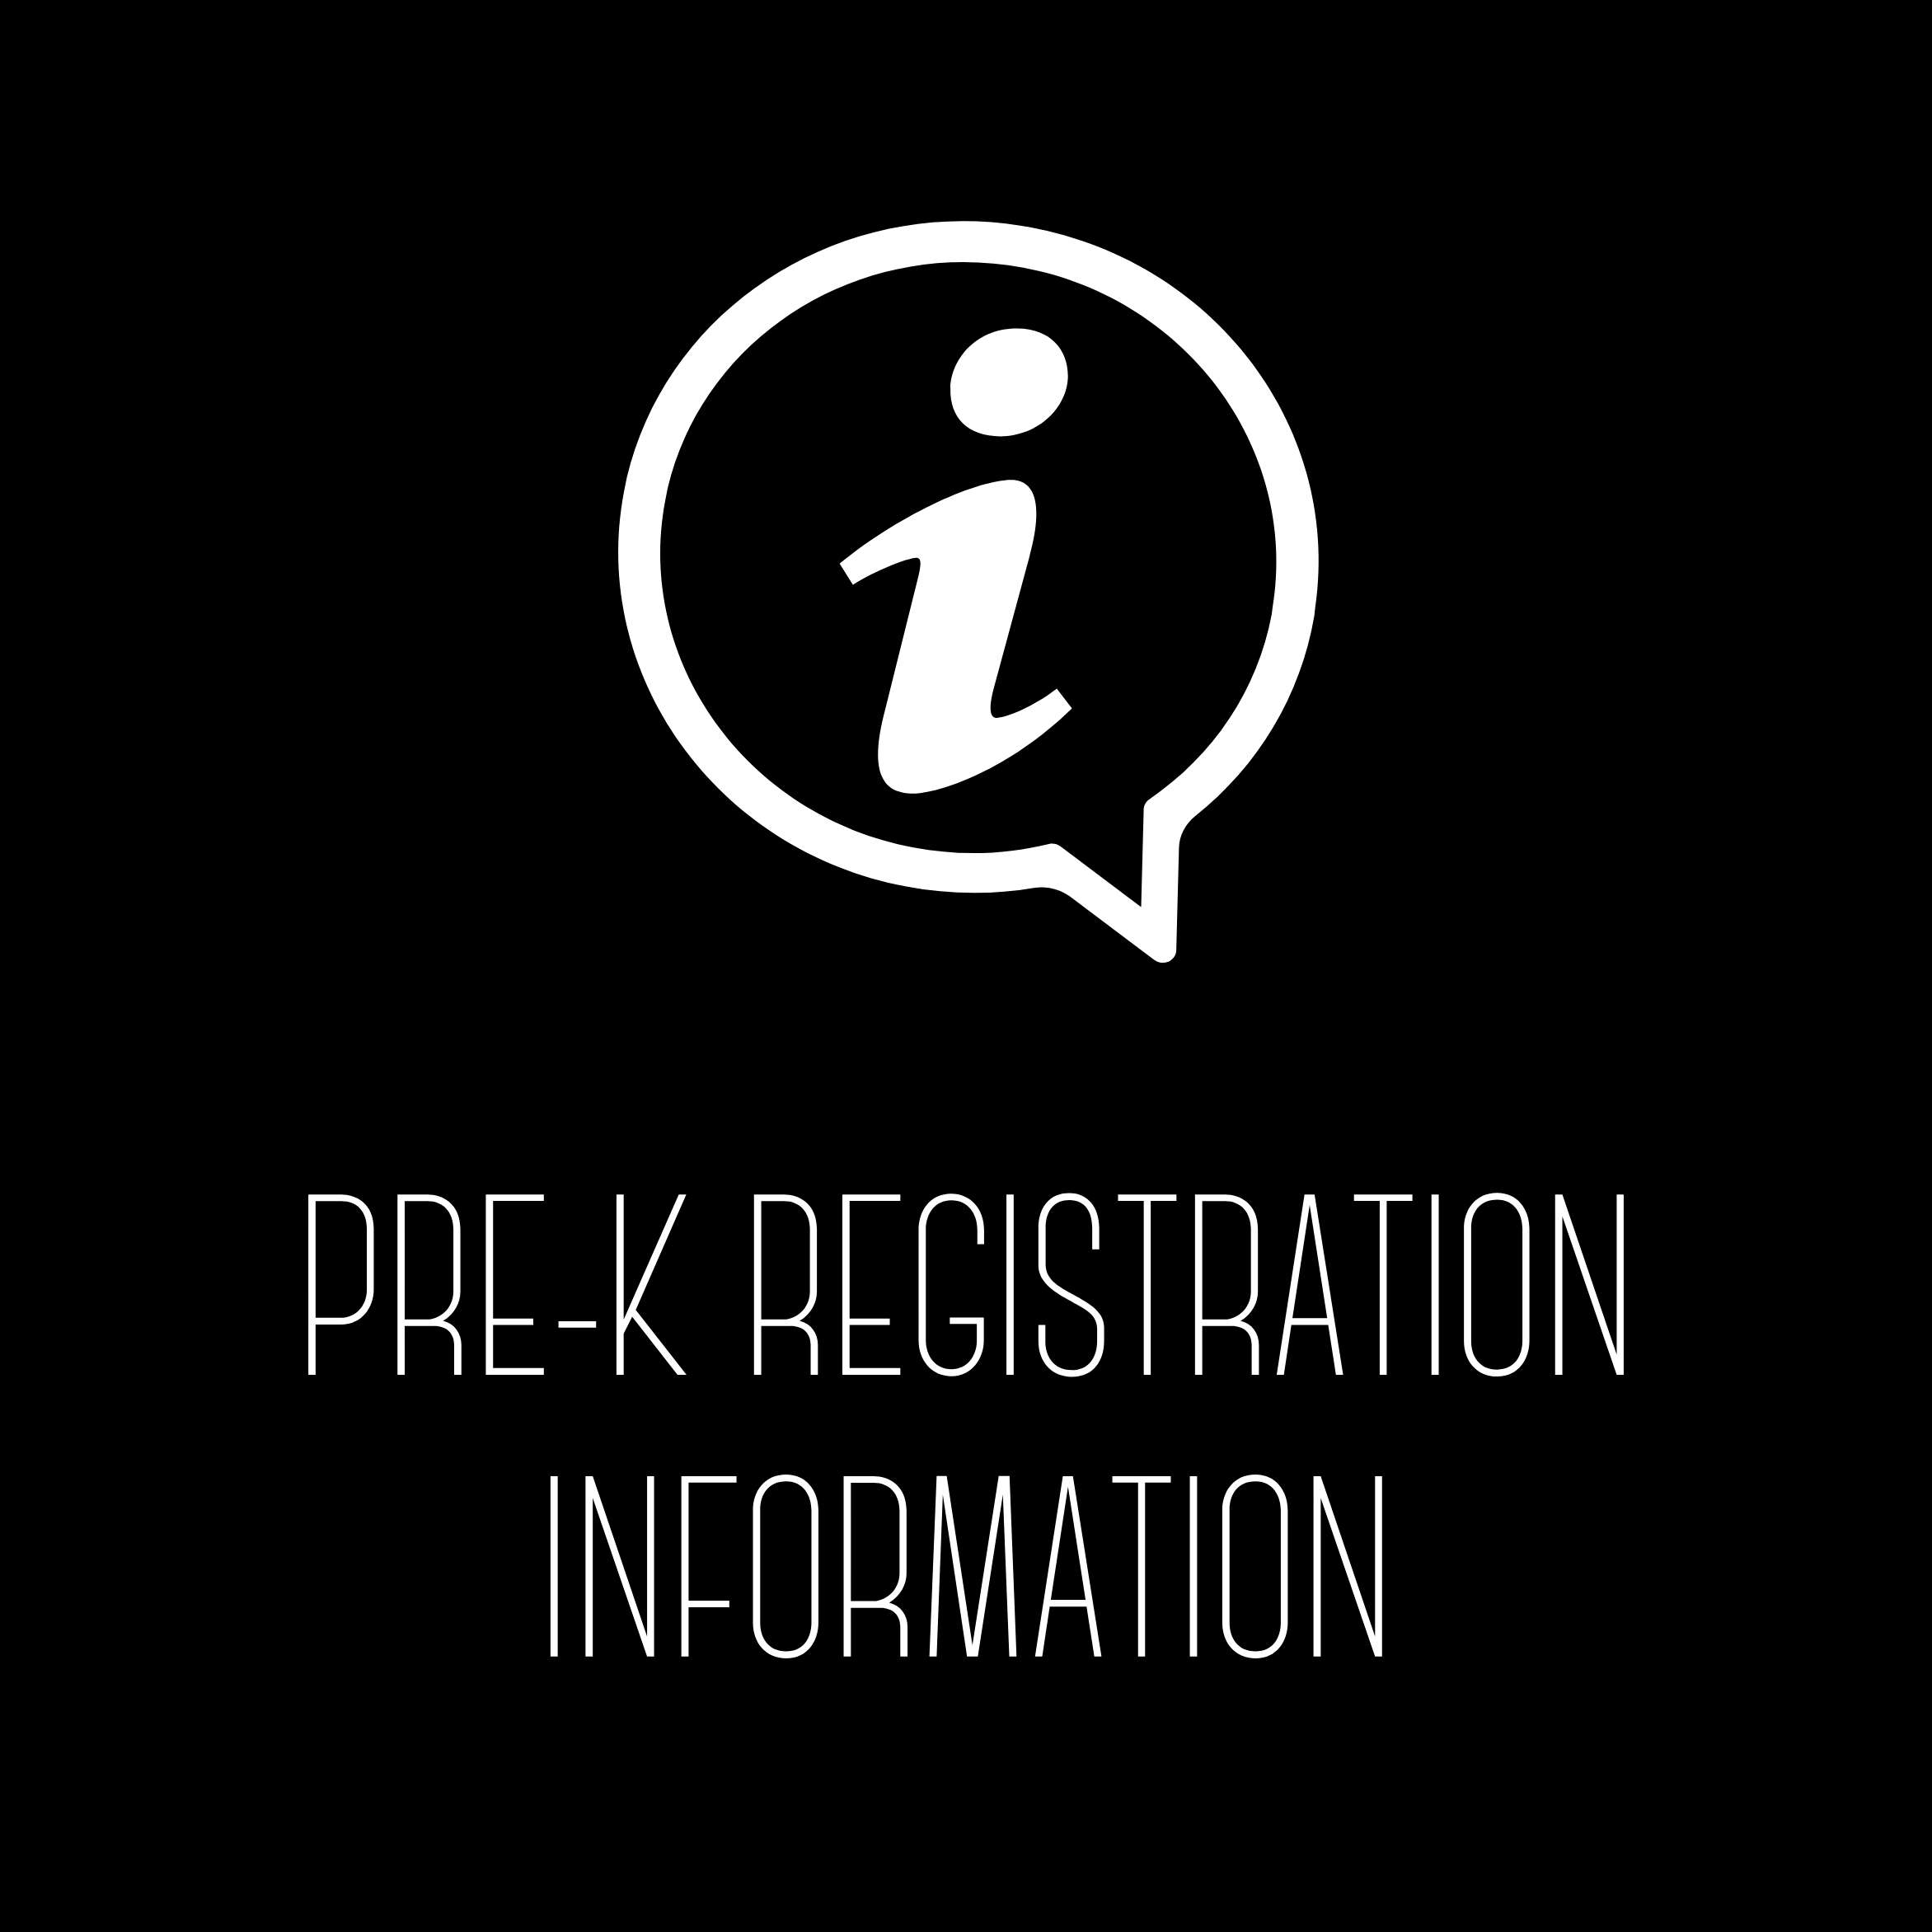 Pre-K Registration Information